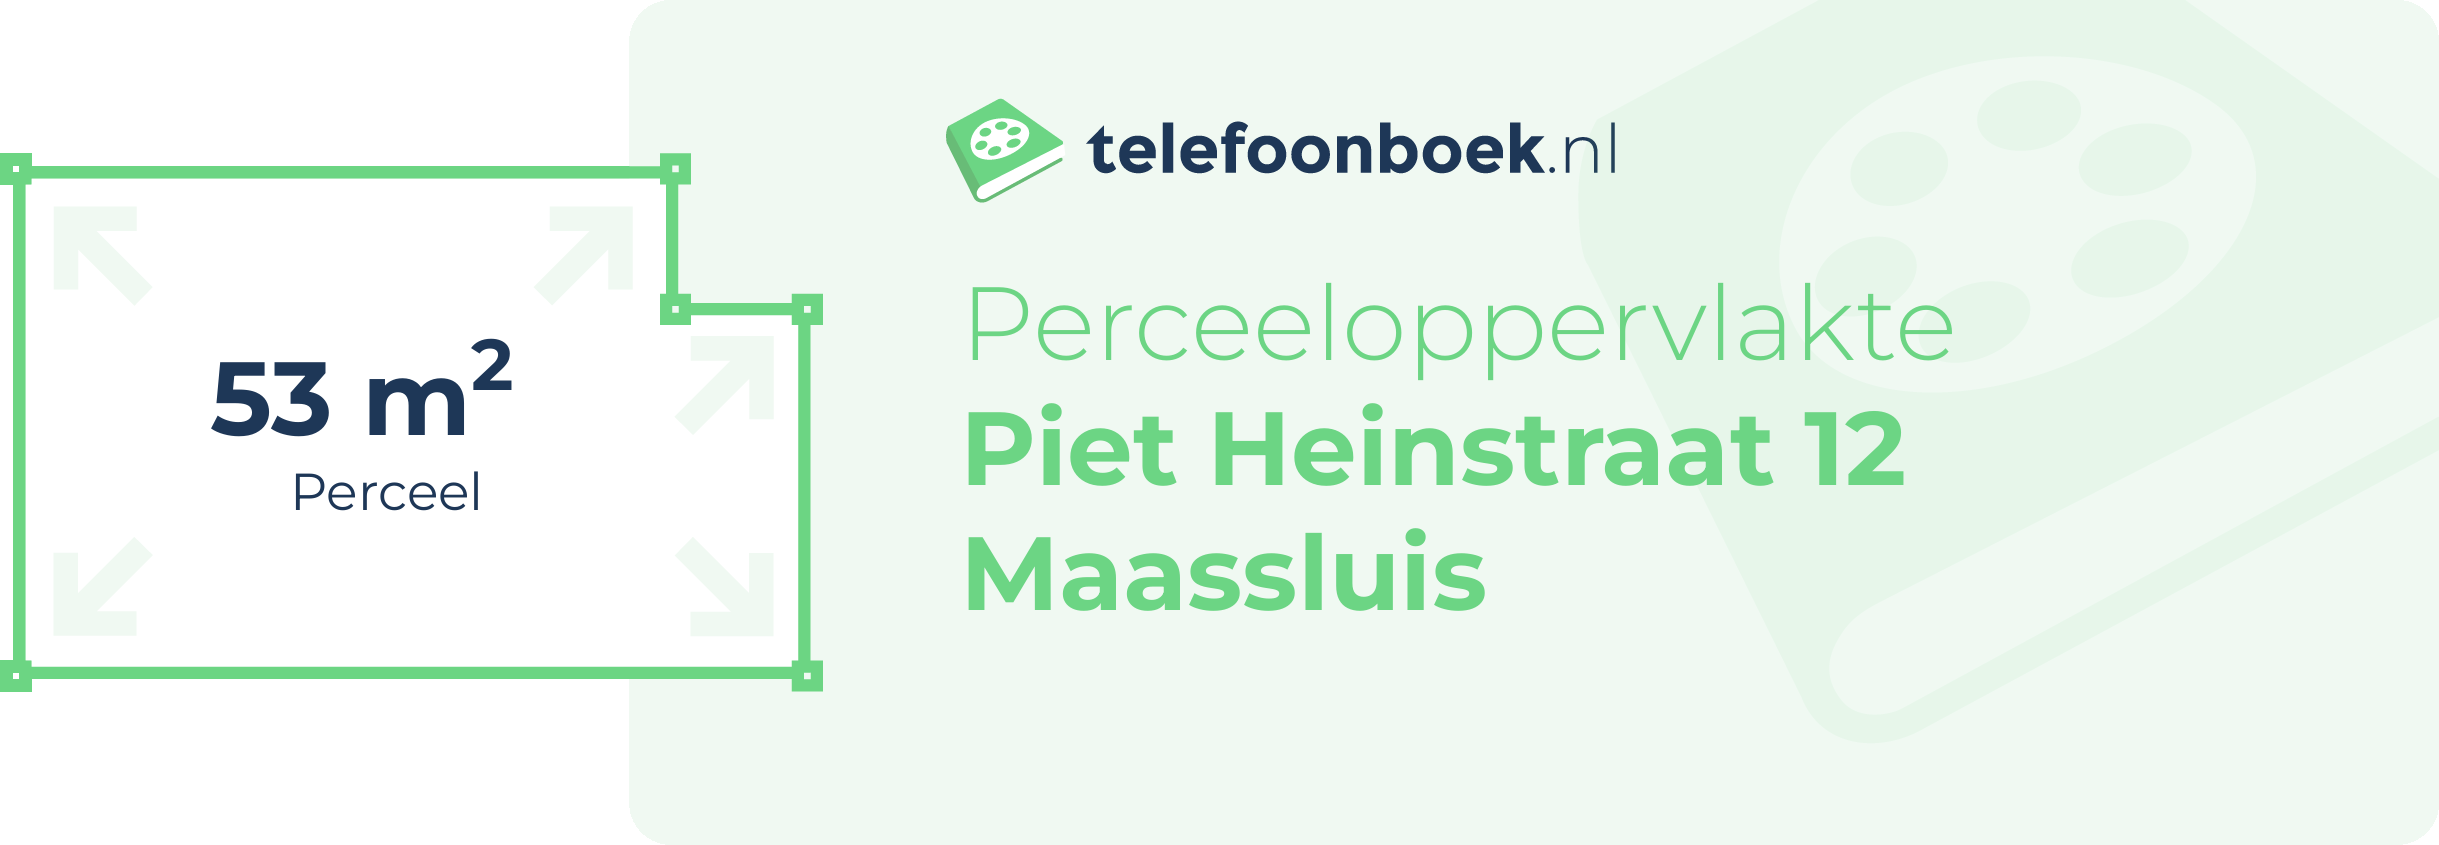 Perceeloppervlakte Piet Heinstraat 12 Maassluis